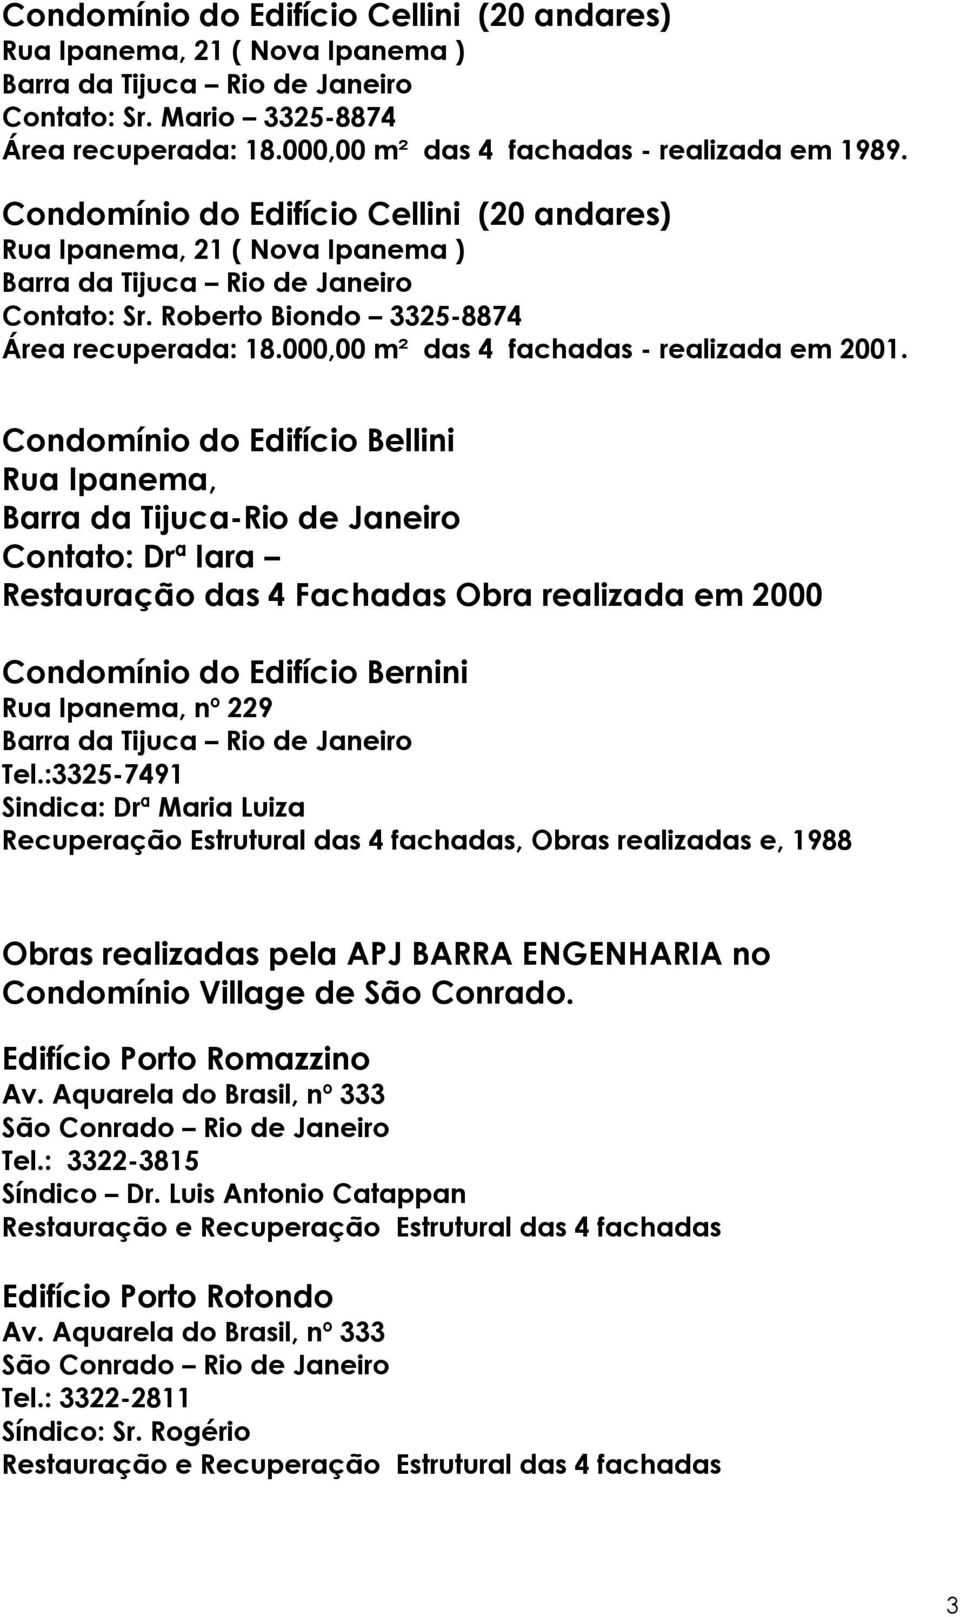 Condomínio do Edifício Bellini Rua Ipanema, Barra da Tijuca-Rio de Janeiro Contato: Drª Iara Restauração das 4 Fachadas Obra realizada em 2000 Condomínio do Edifício Bernini Rua Ipanema, nº 229 Tel.